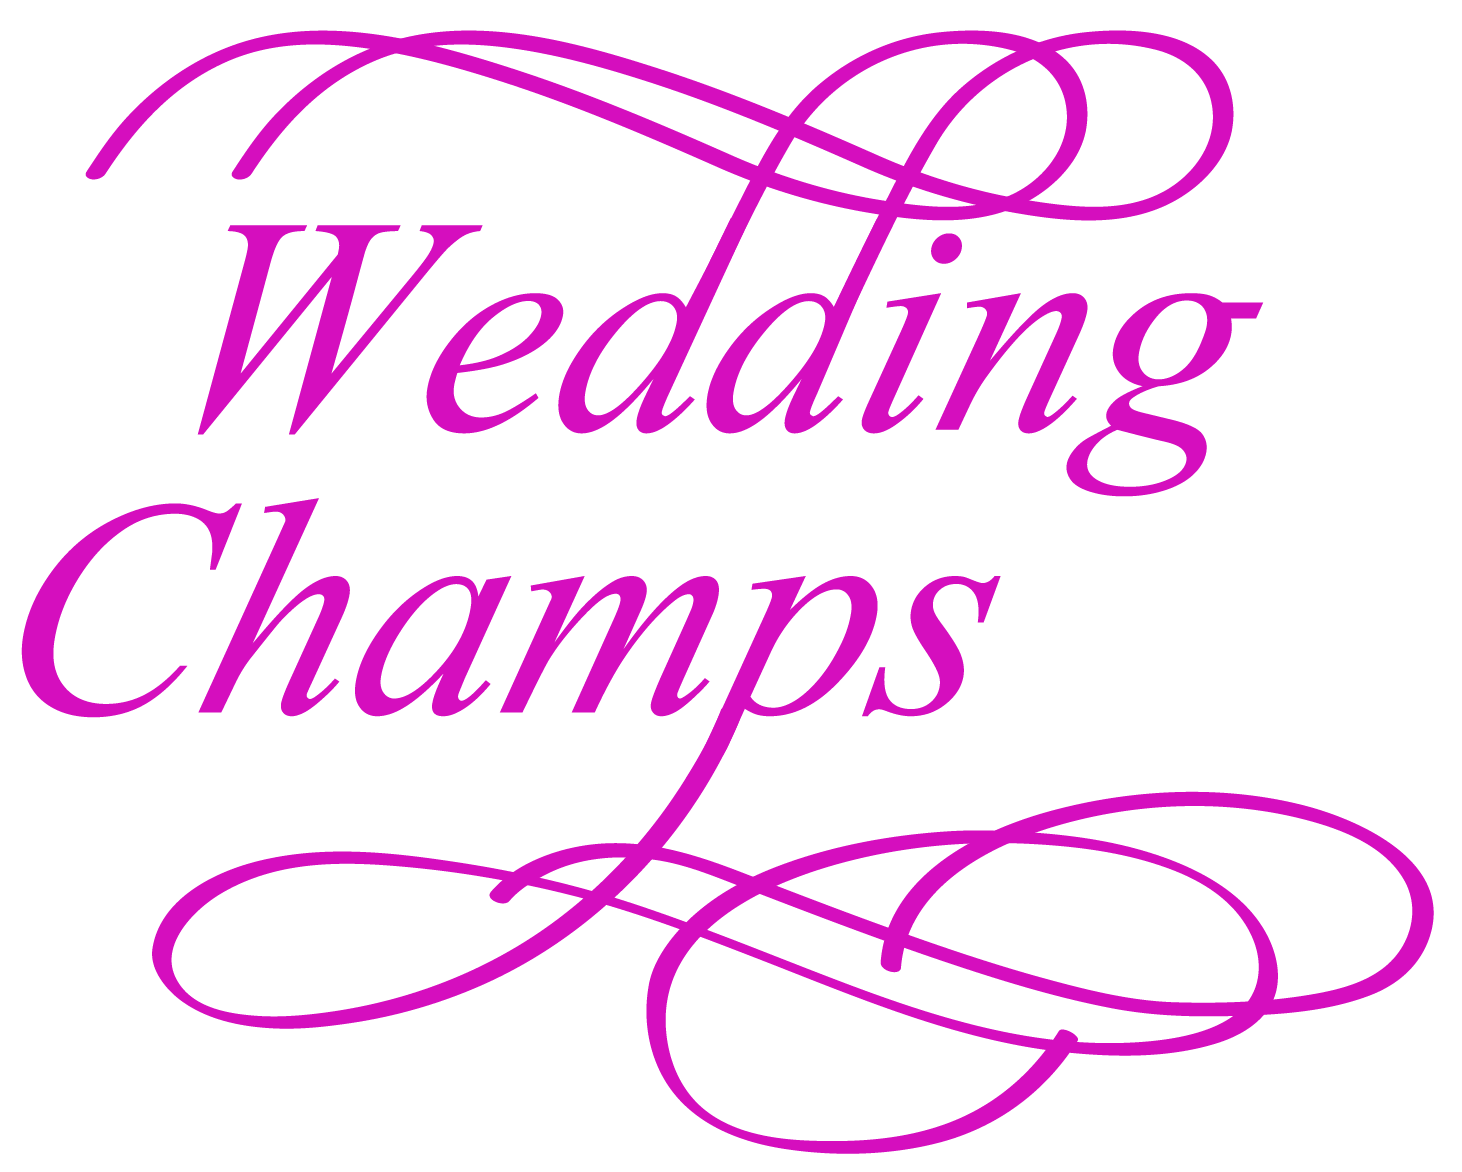 Wedding Champs